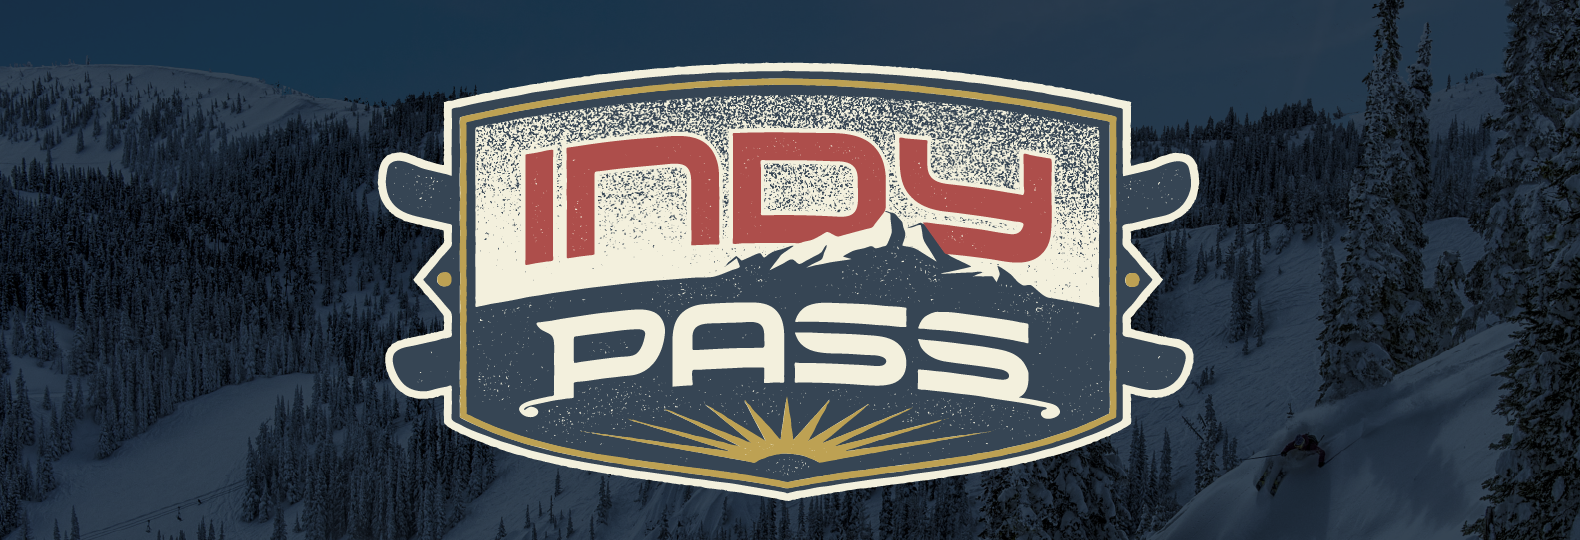 Indy Pass White Pine